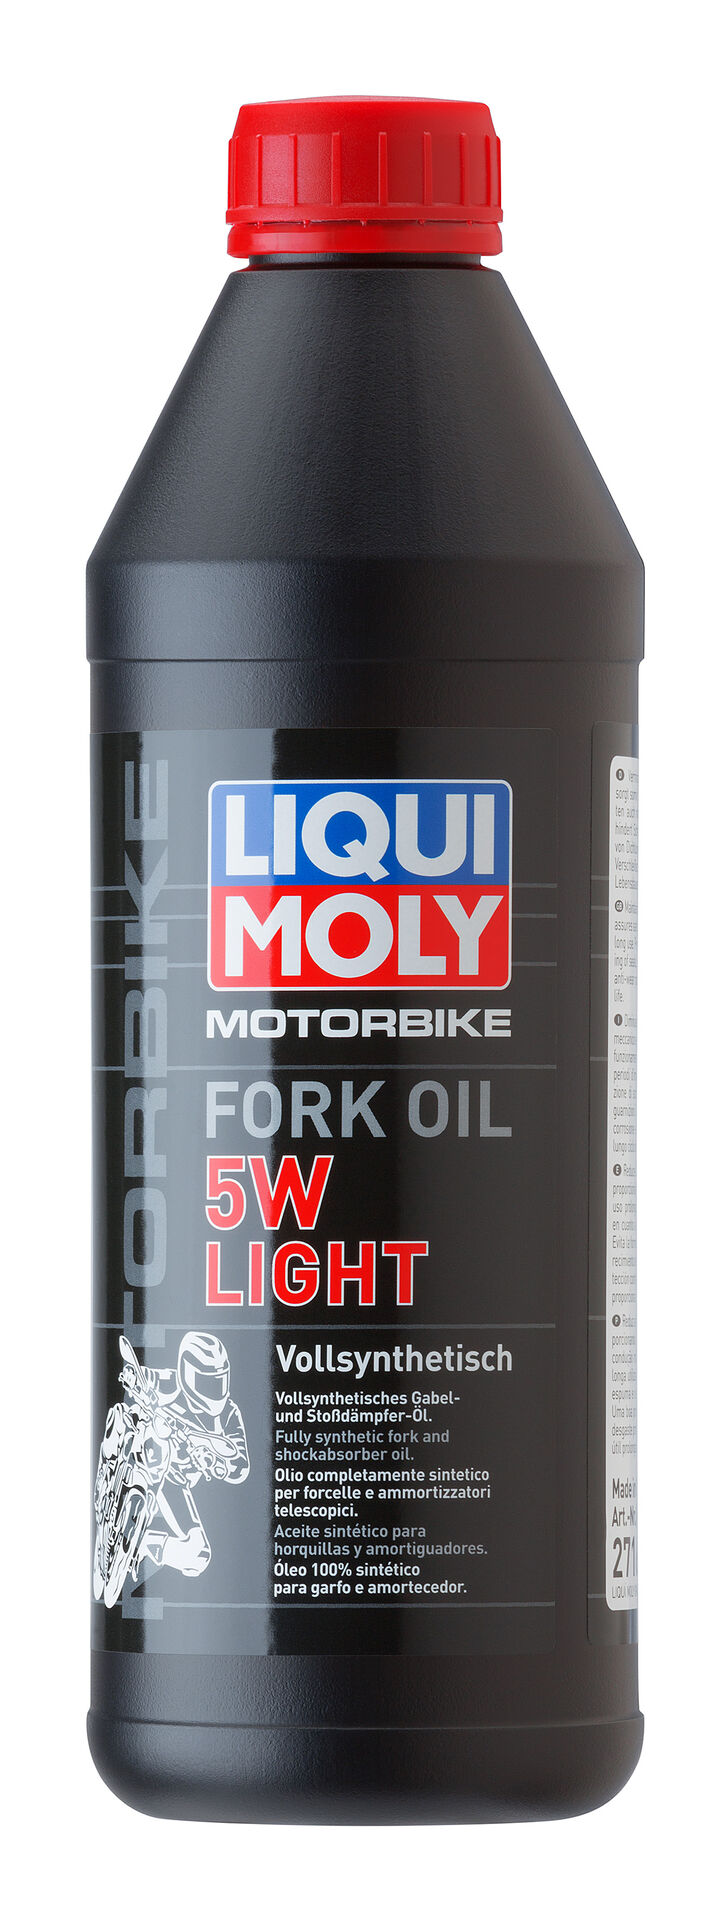 Liqui Moly Motorbike Fork Oil 5W light Motorrad Gabelöl Stoßdämpferöl 1L